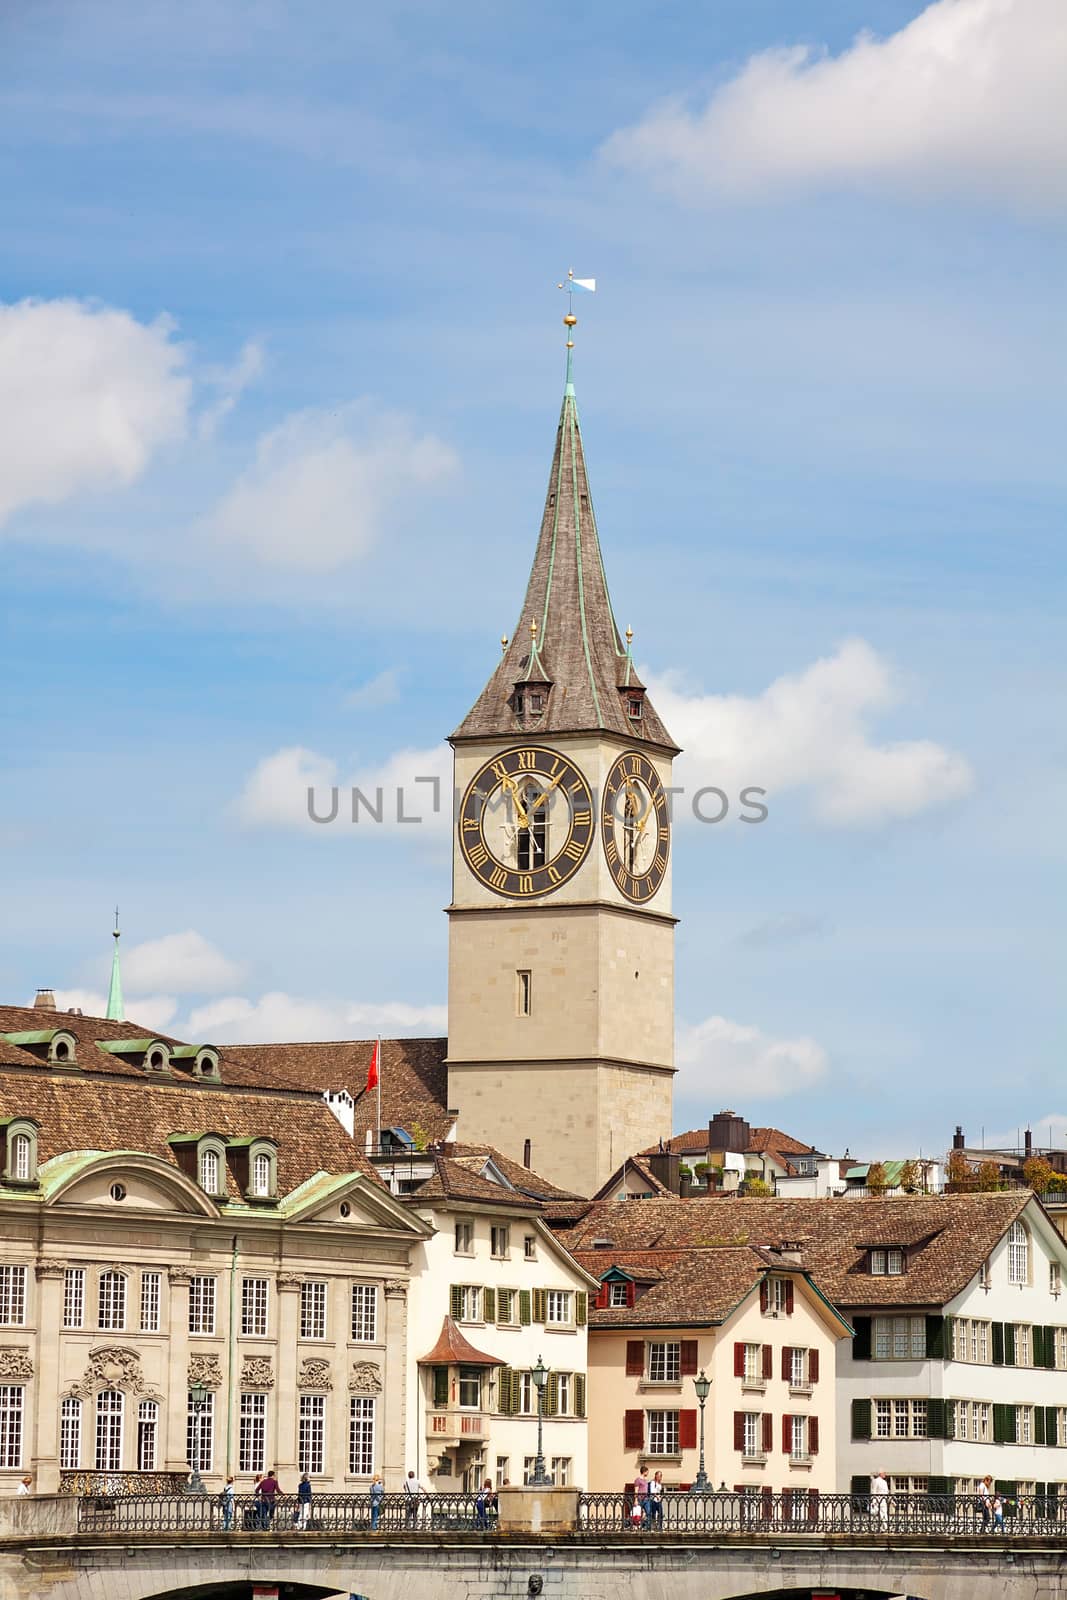 St. Peter (Landmark) of Zurich, downtown by aldorado